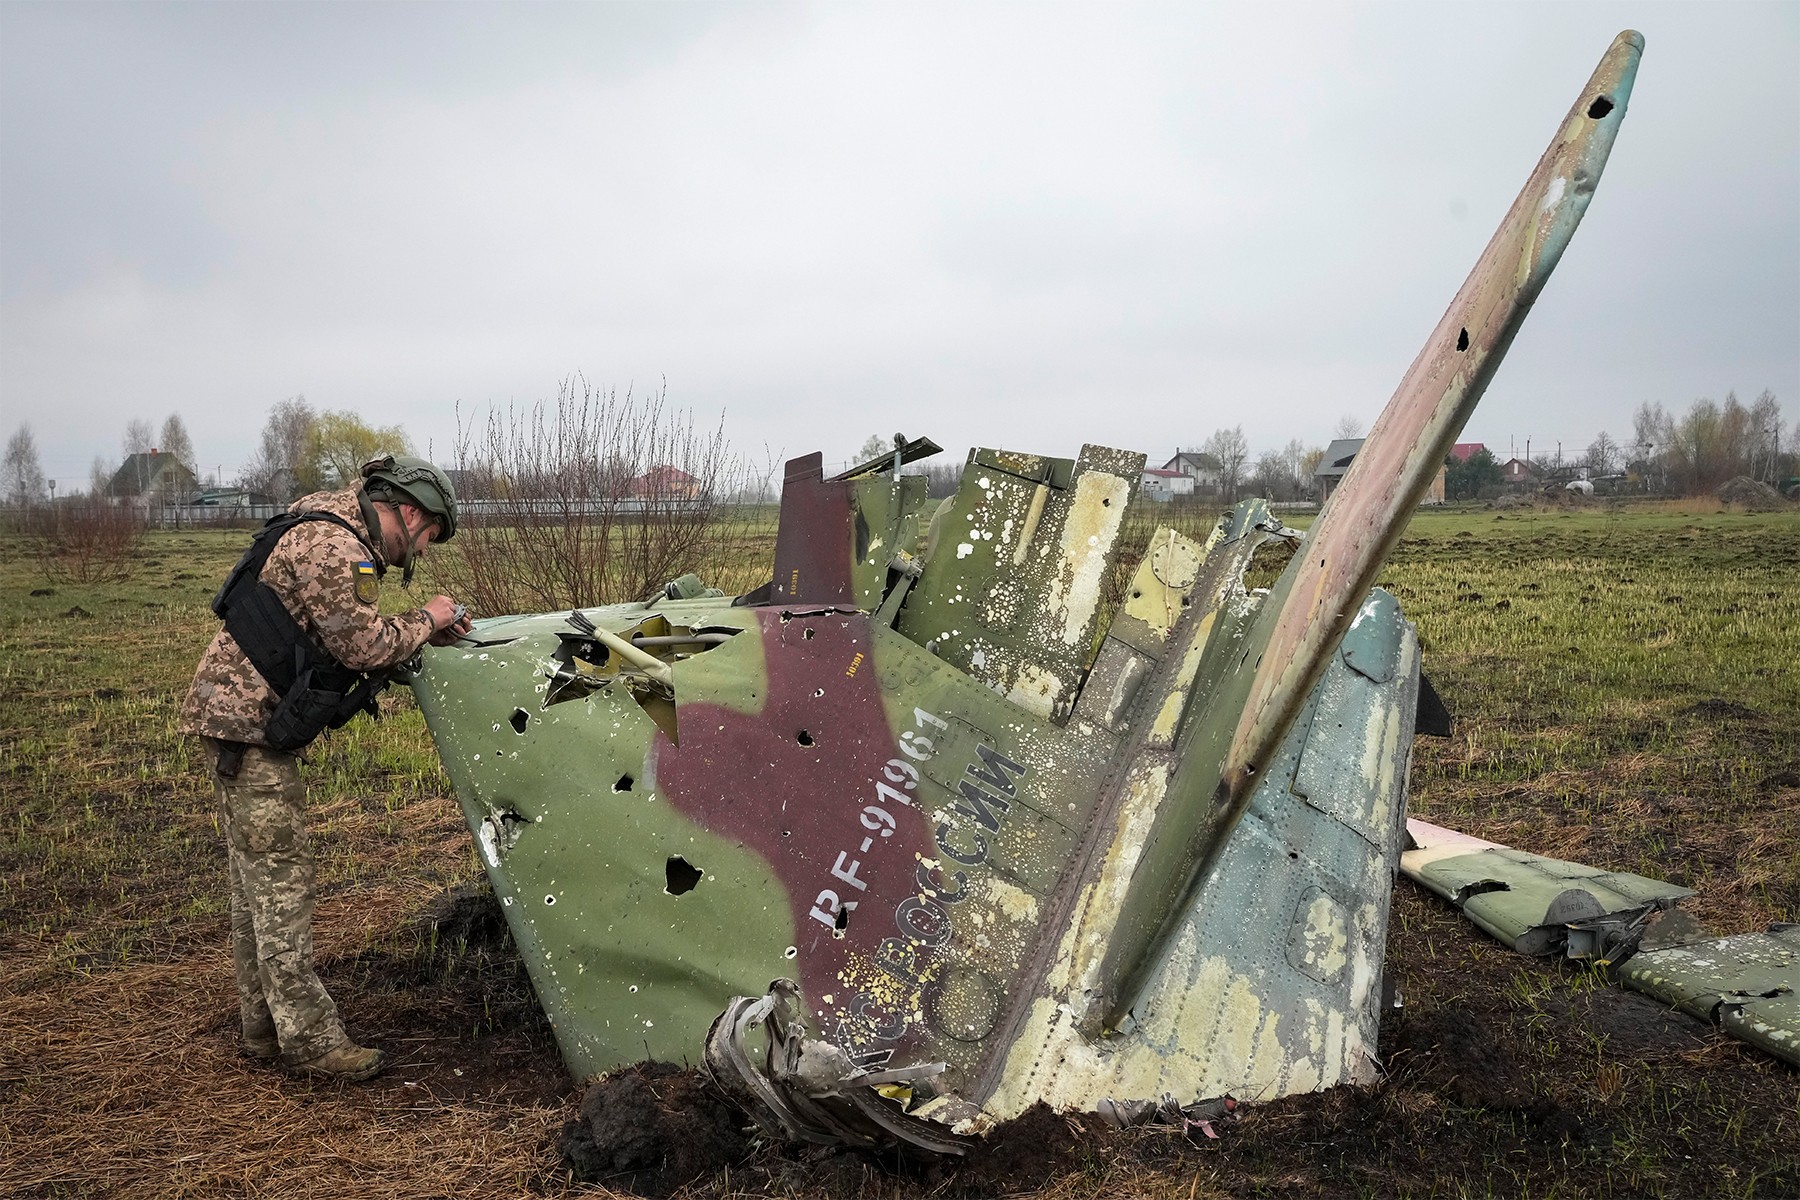 اوکراین می گوید سه هواپیمای جنگی دیگر روسیه را سرنگون کرده است